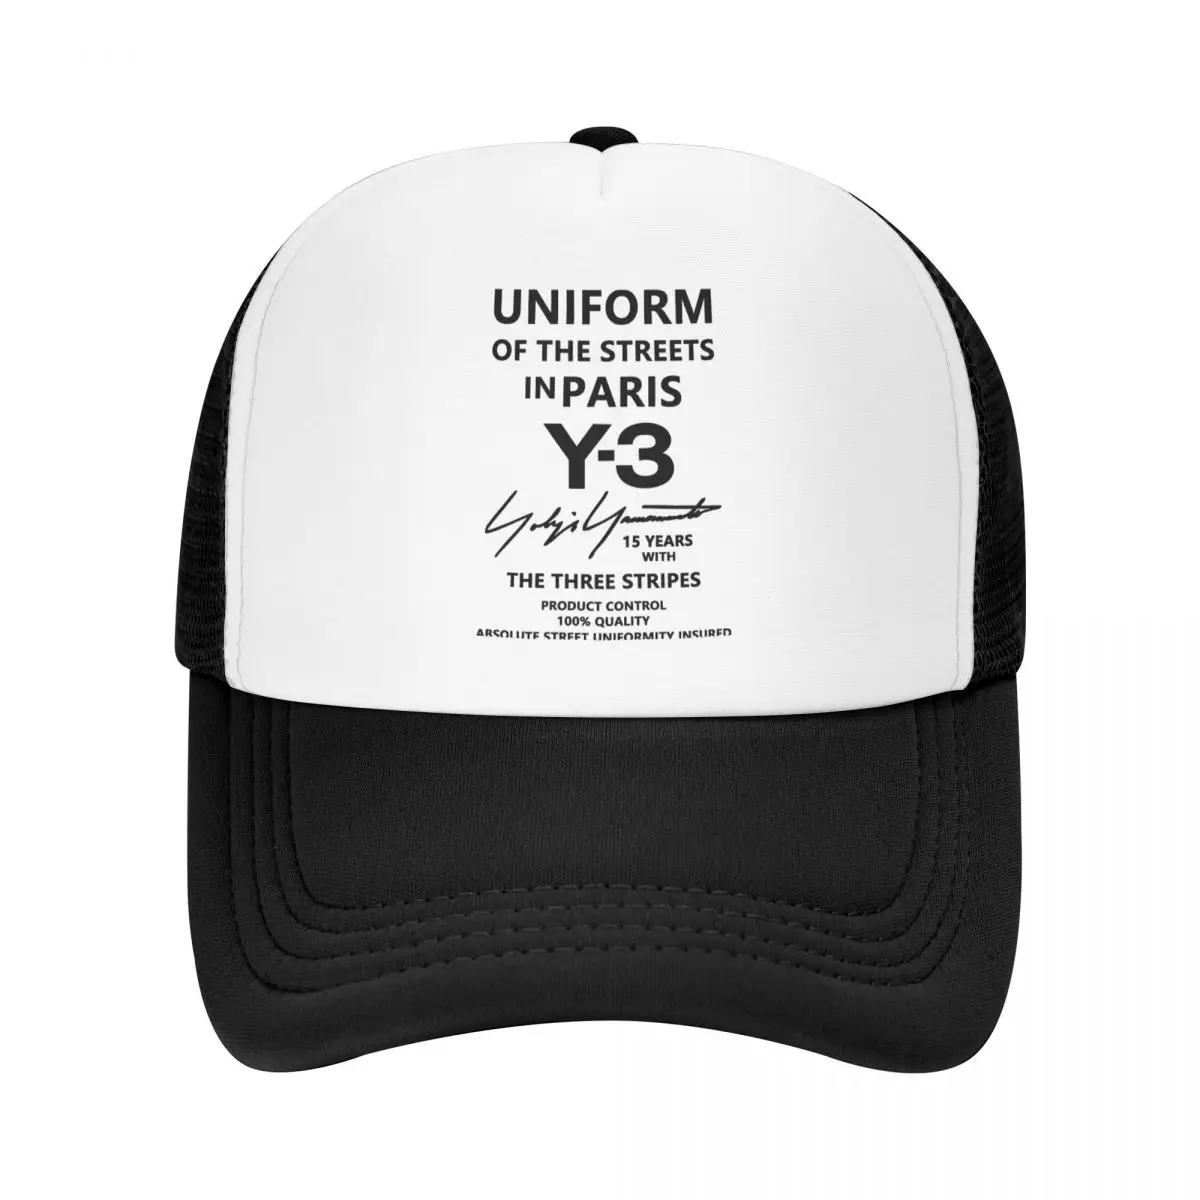 

Бейсболка Yohji Yamamoto, кепка для бега, головные уборы для гольфа, мужские кепки для пиклебола, головной убор для мужчин и женщин, защита от солнца